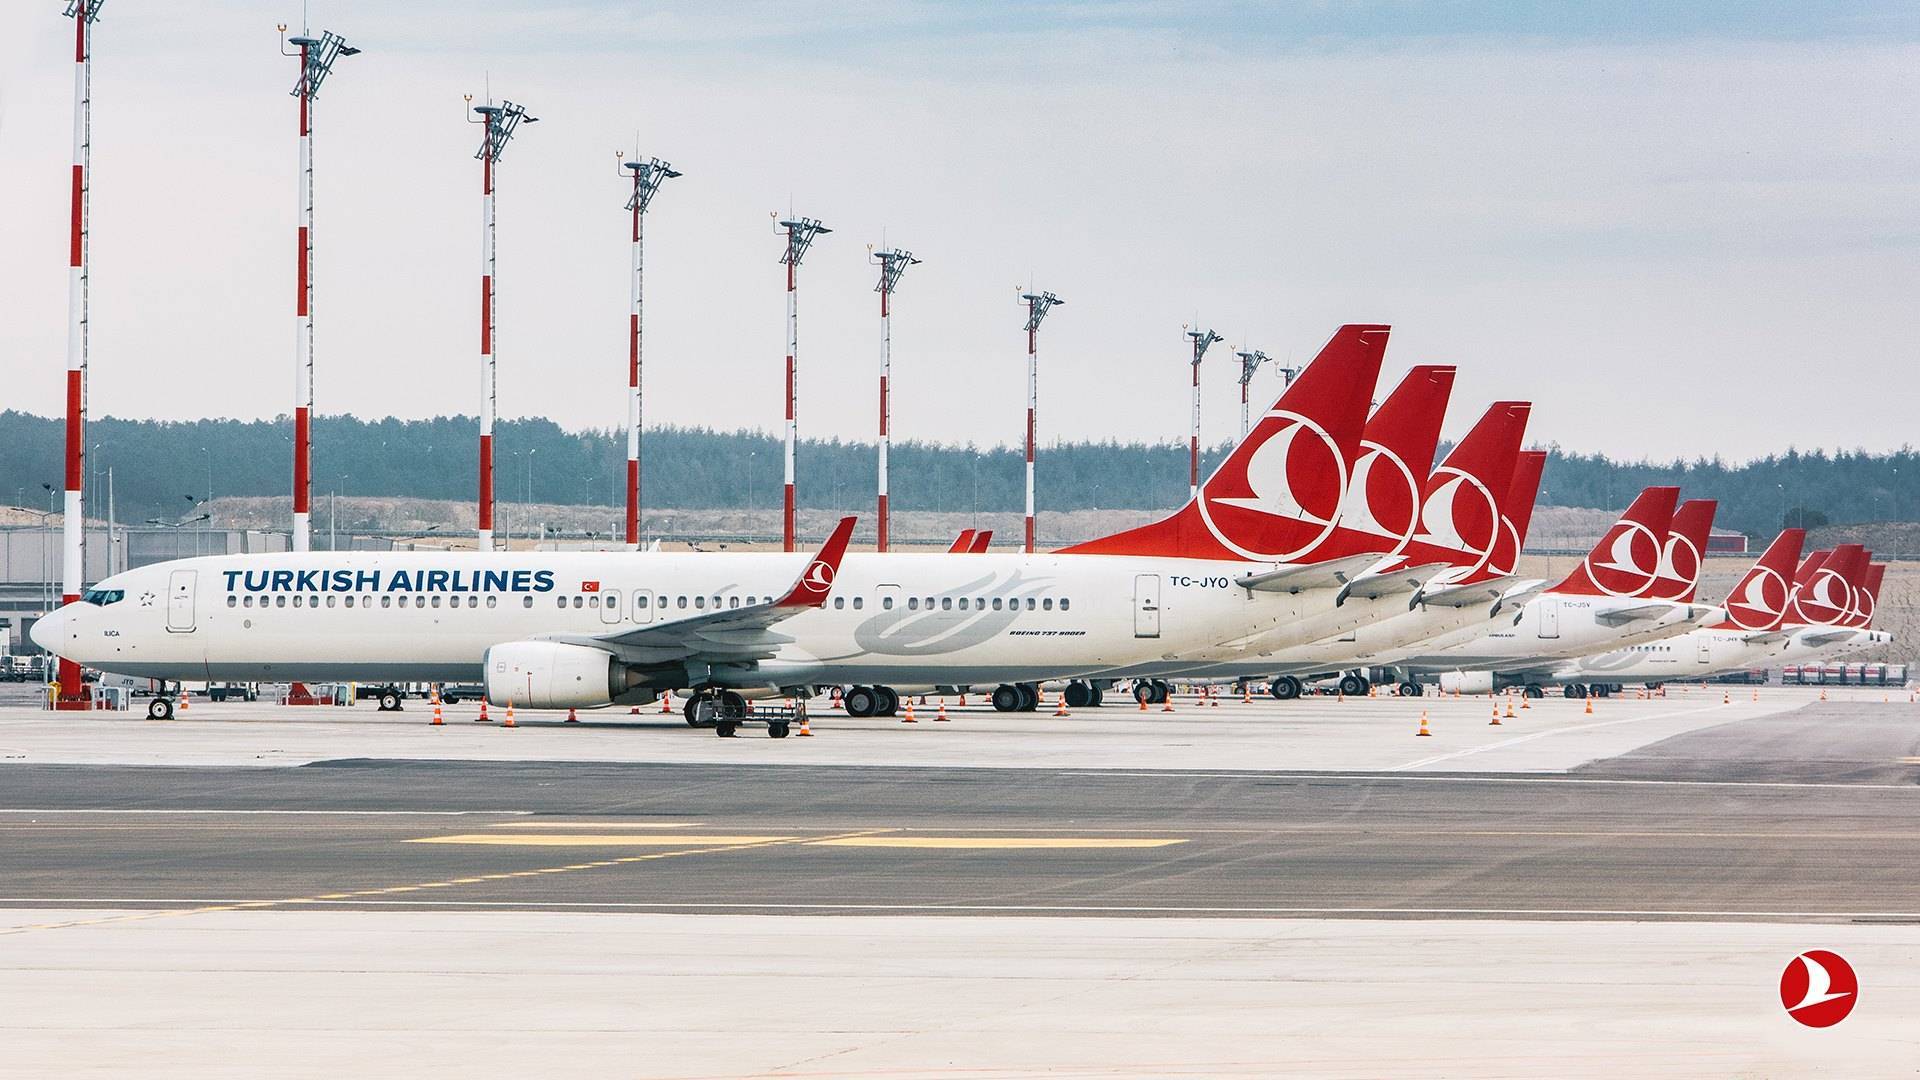 Авиакомпания «turkish airlines» авиабилеты турецкие авиалинии | официальный сайт на русском языке авиа чартер